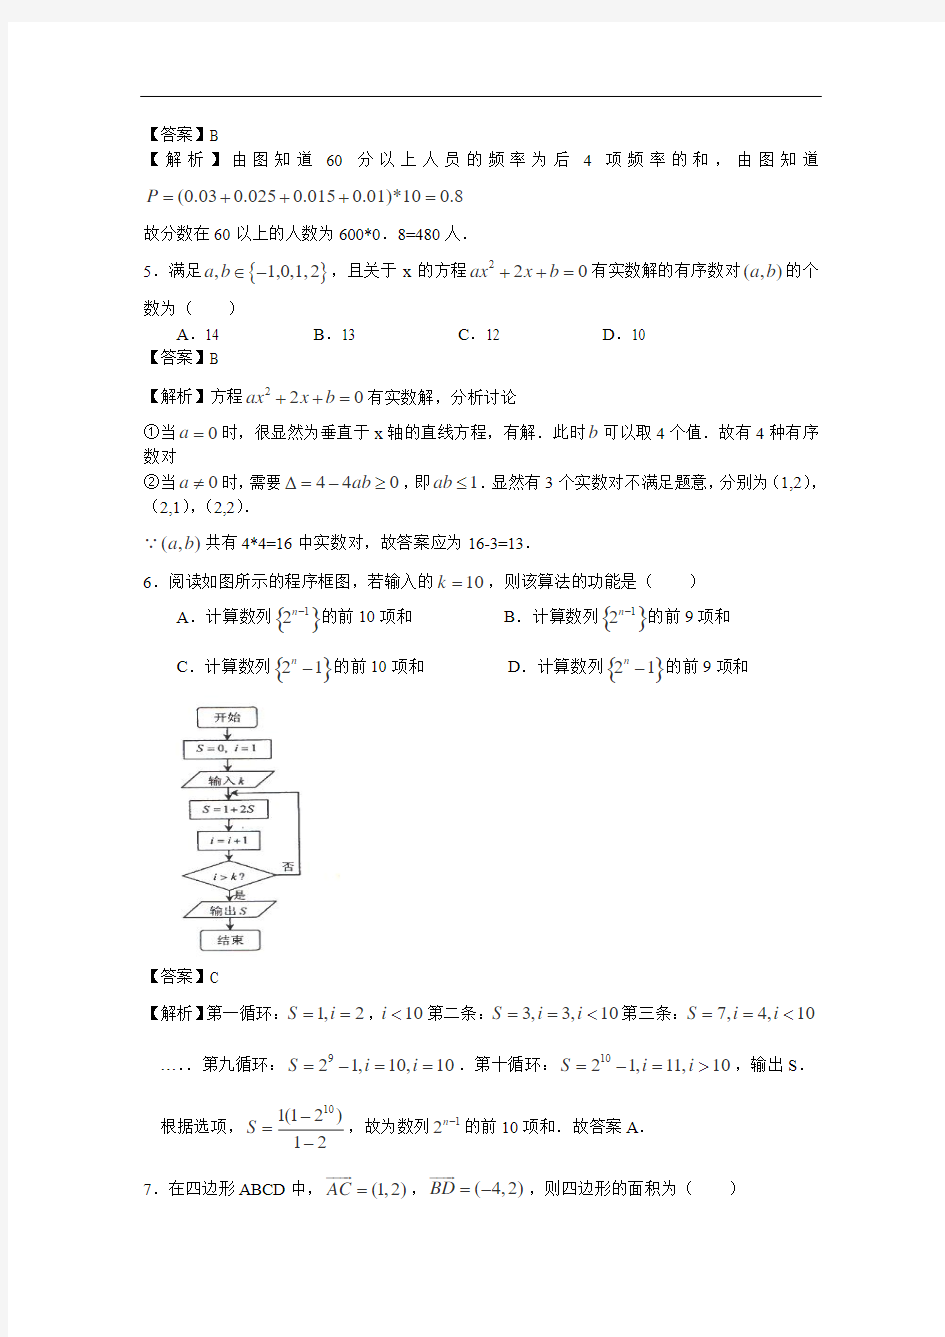 2013年高考真题——理科数学(福建卷)解析版